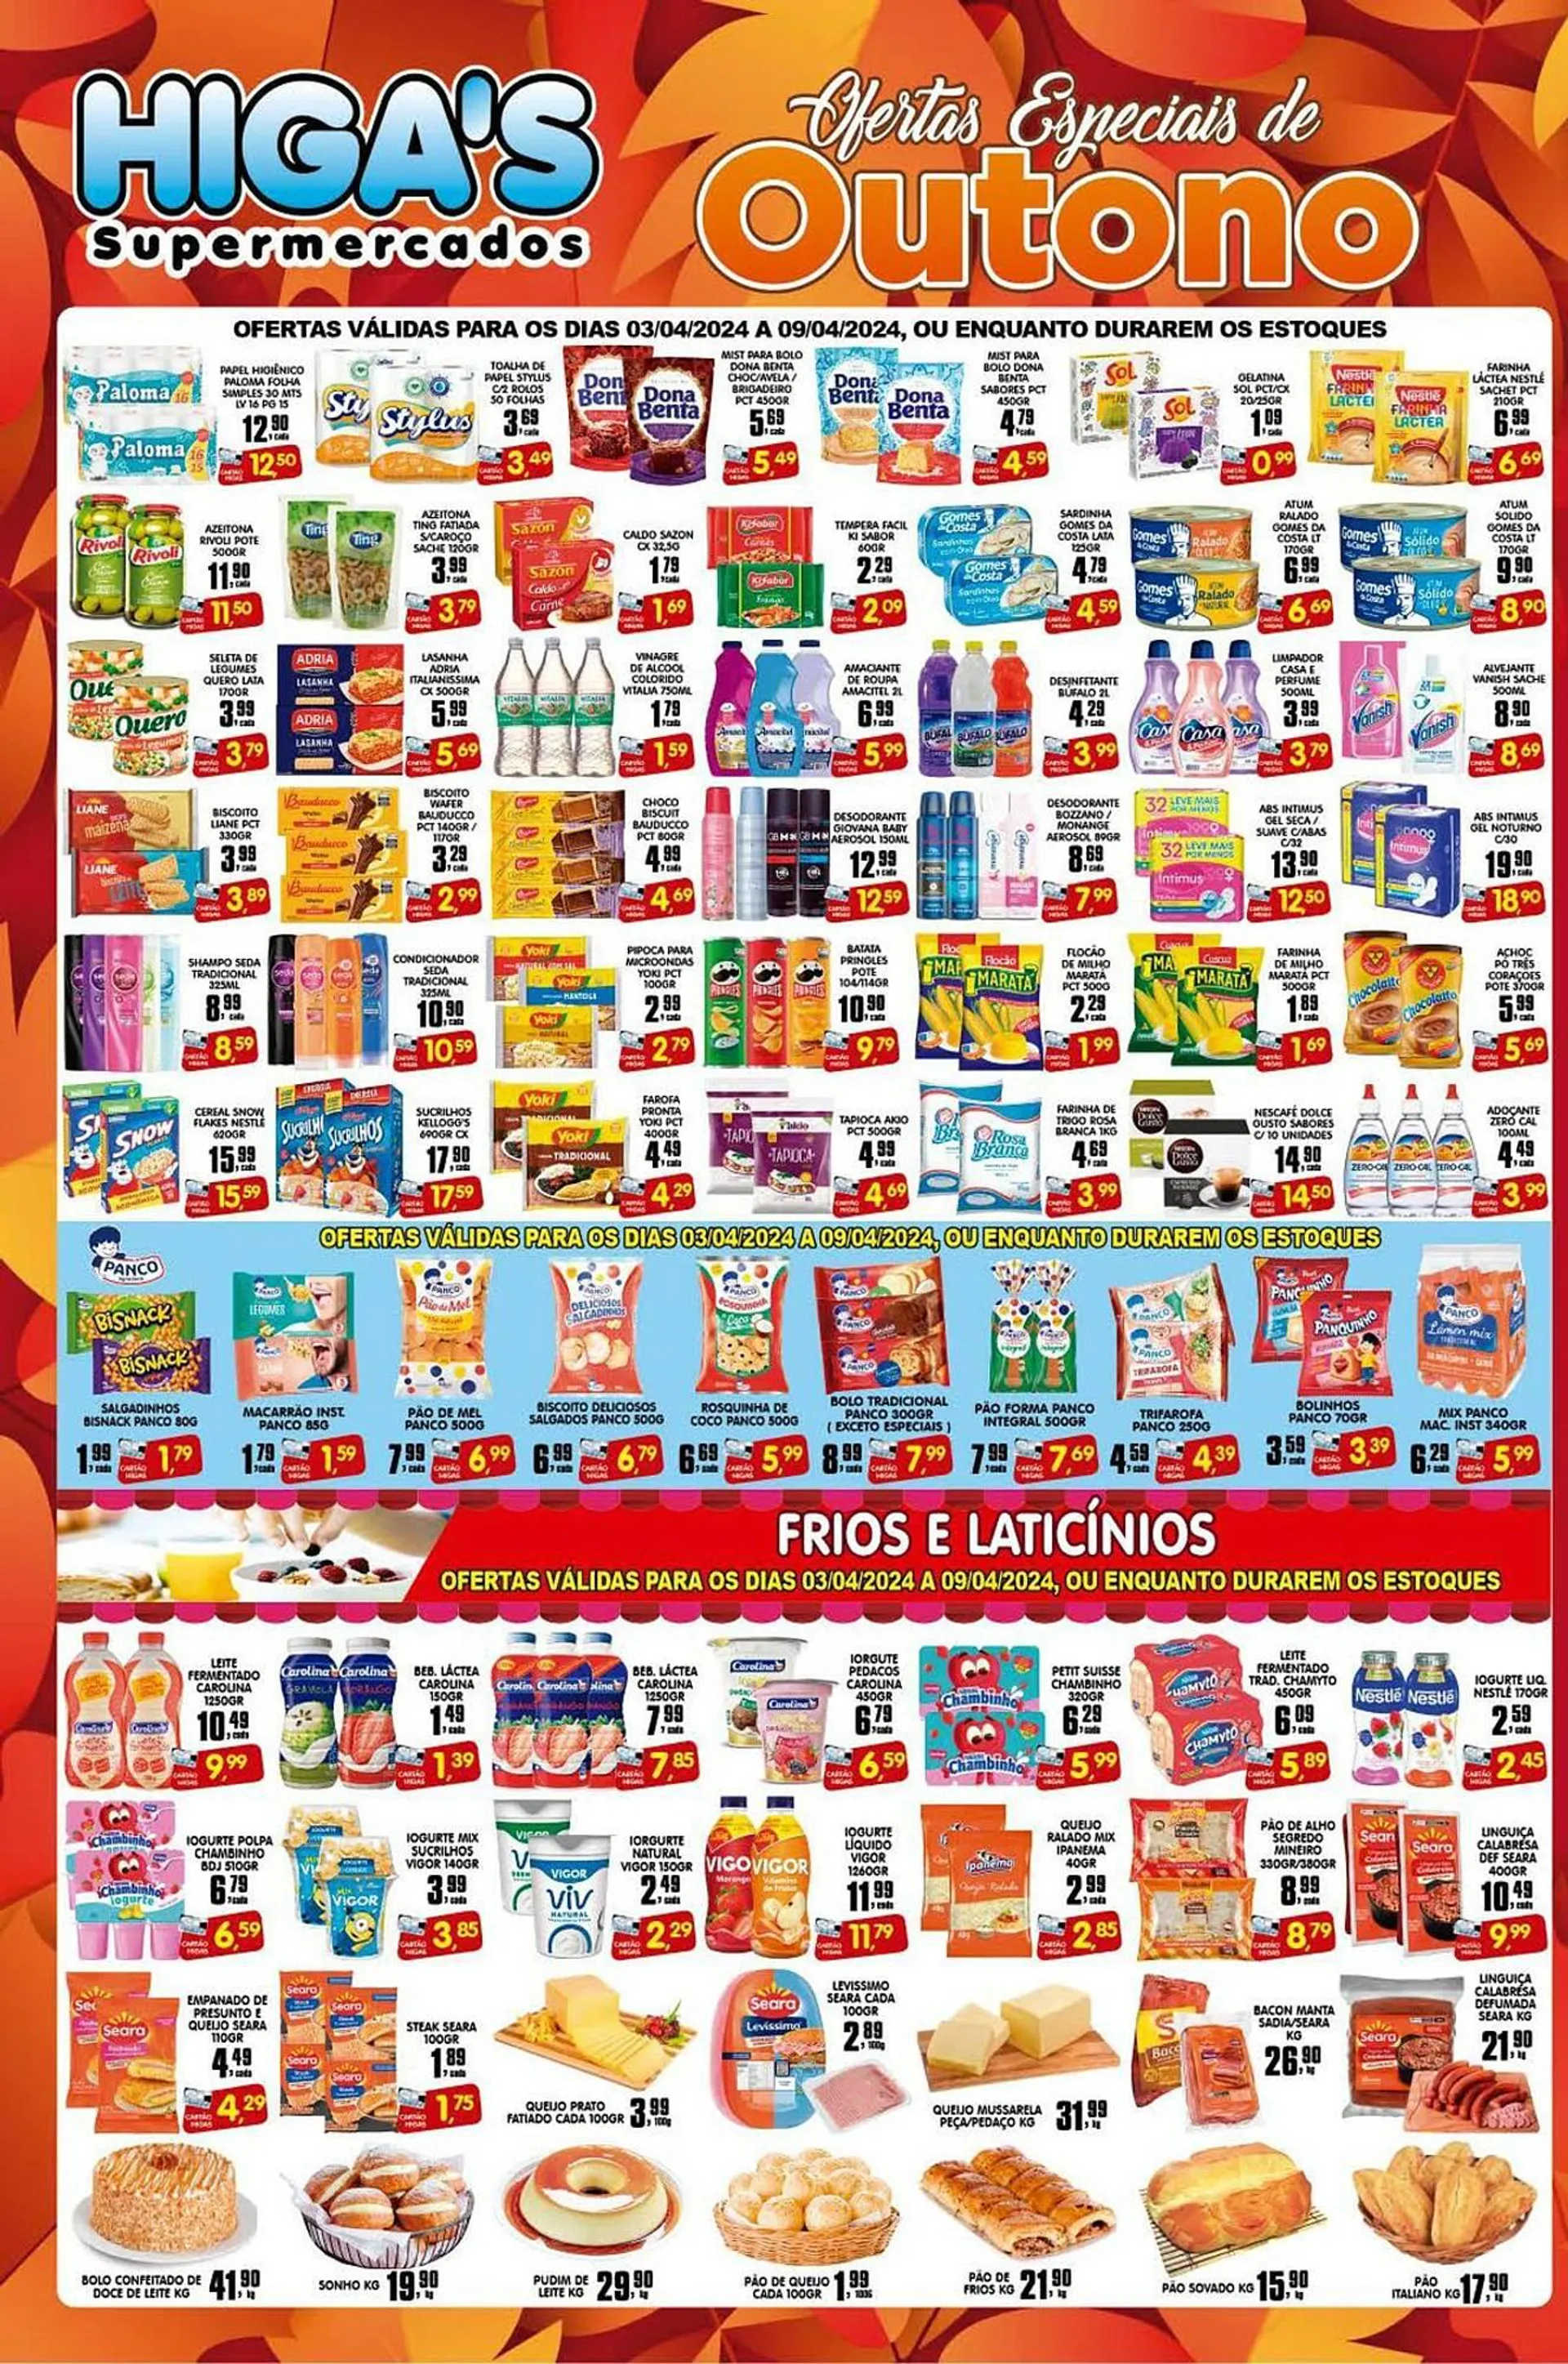 Encarte de Catálogo Higa's Supermercado 2 de abril até 9 de abril 2024 - Pagina 2